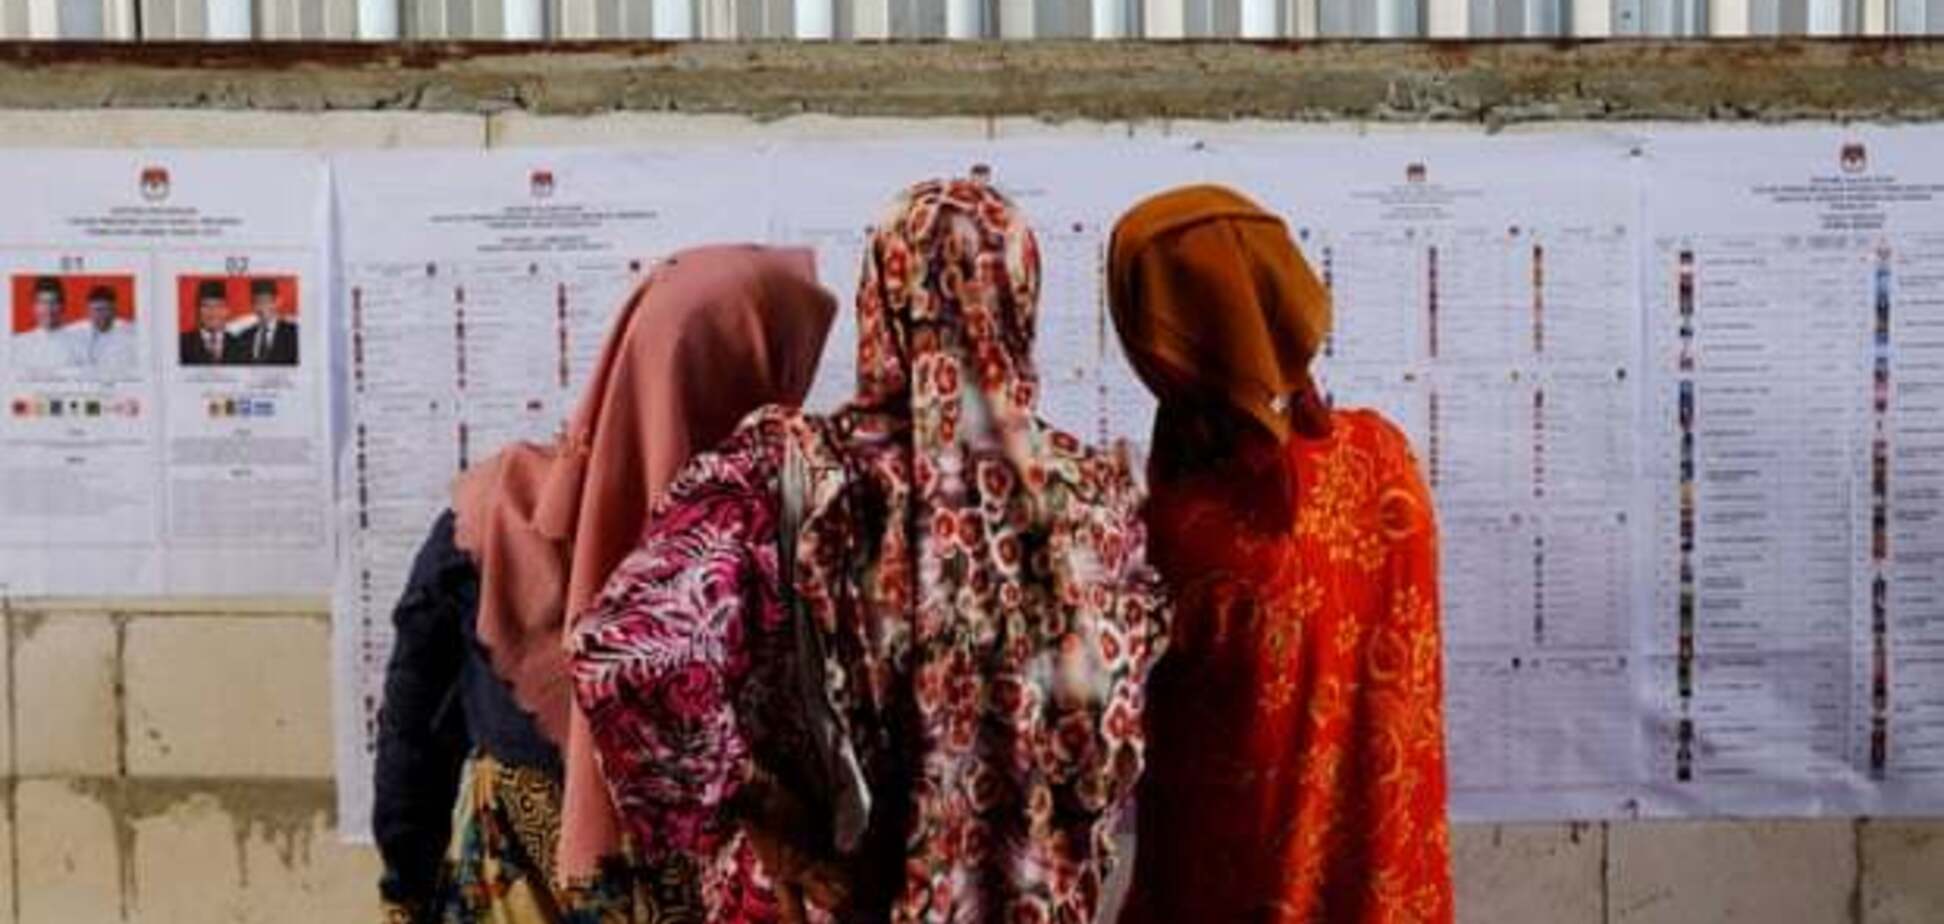 Умерли почти 300 человек: как в Индонезии выборы превратились в трагедию